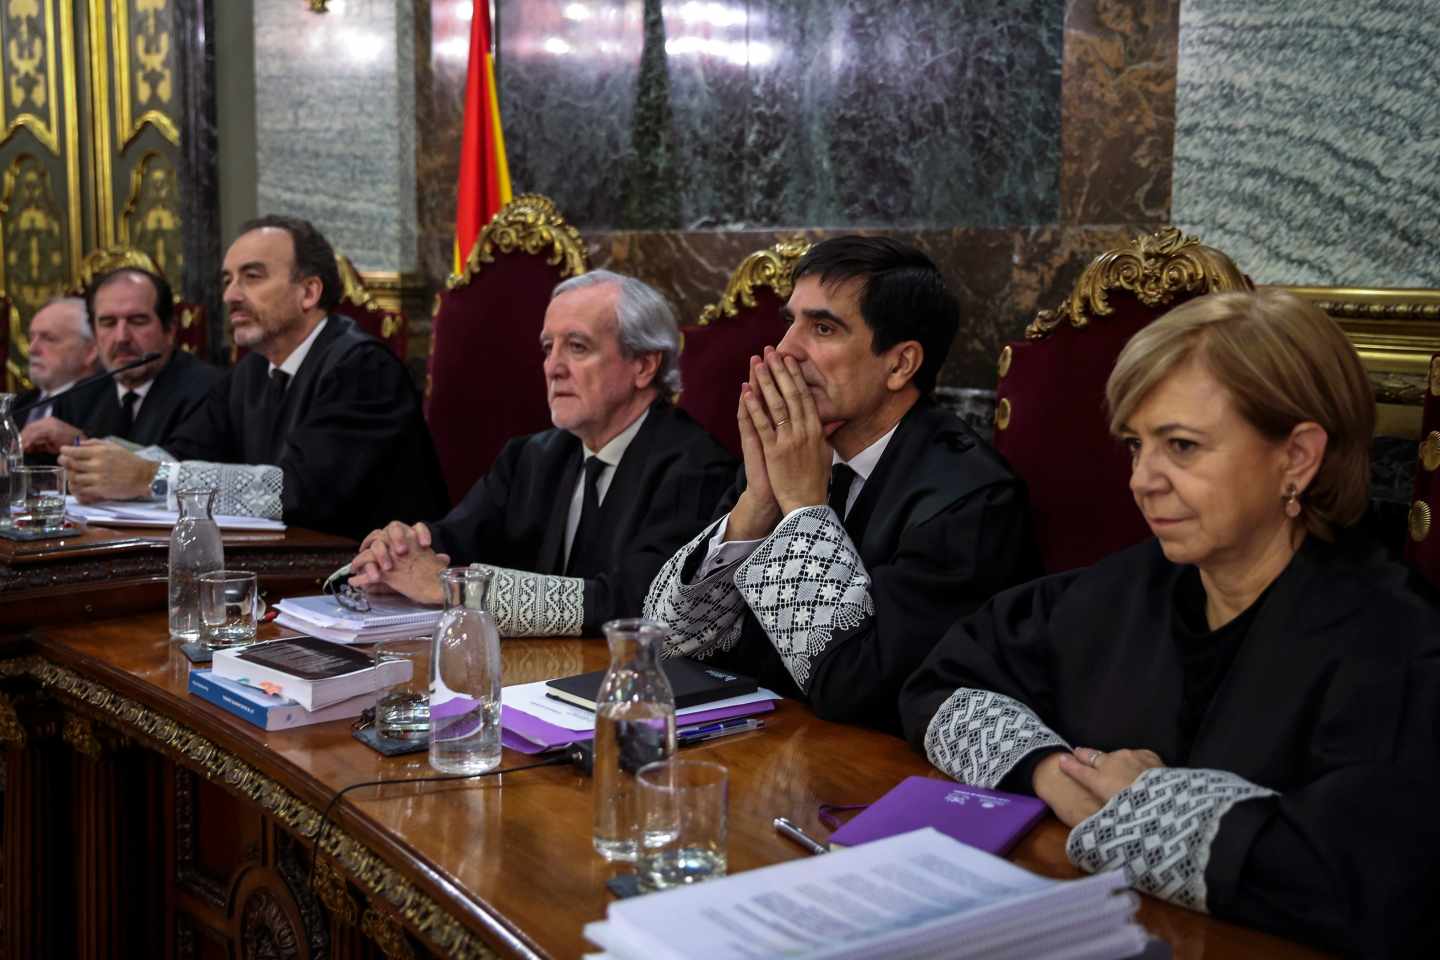 Juicio al procés: de izqda. a dcha., los magistrados Varela, Martínez Arrieta, Marchena, Berdugo, Del Moral y Ferrer.